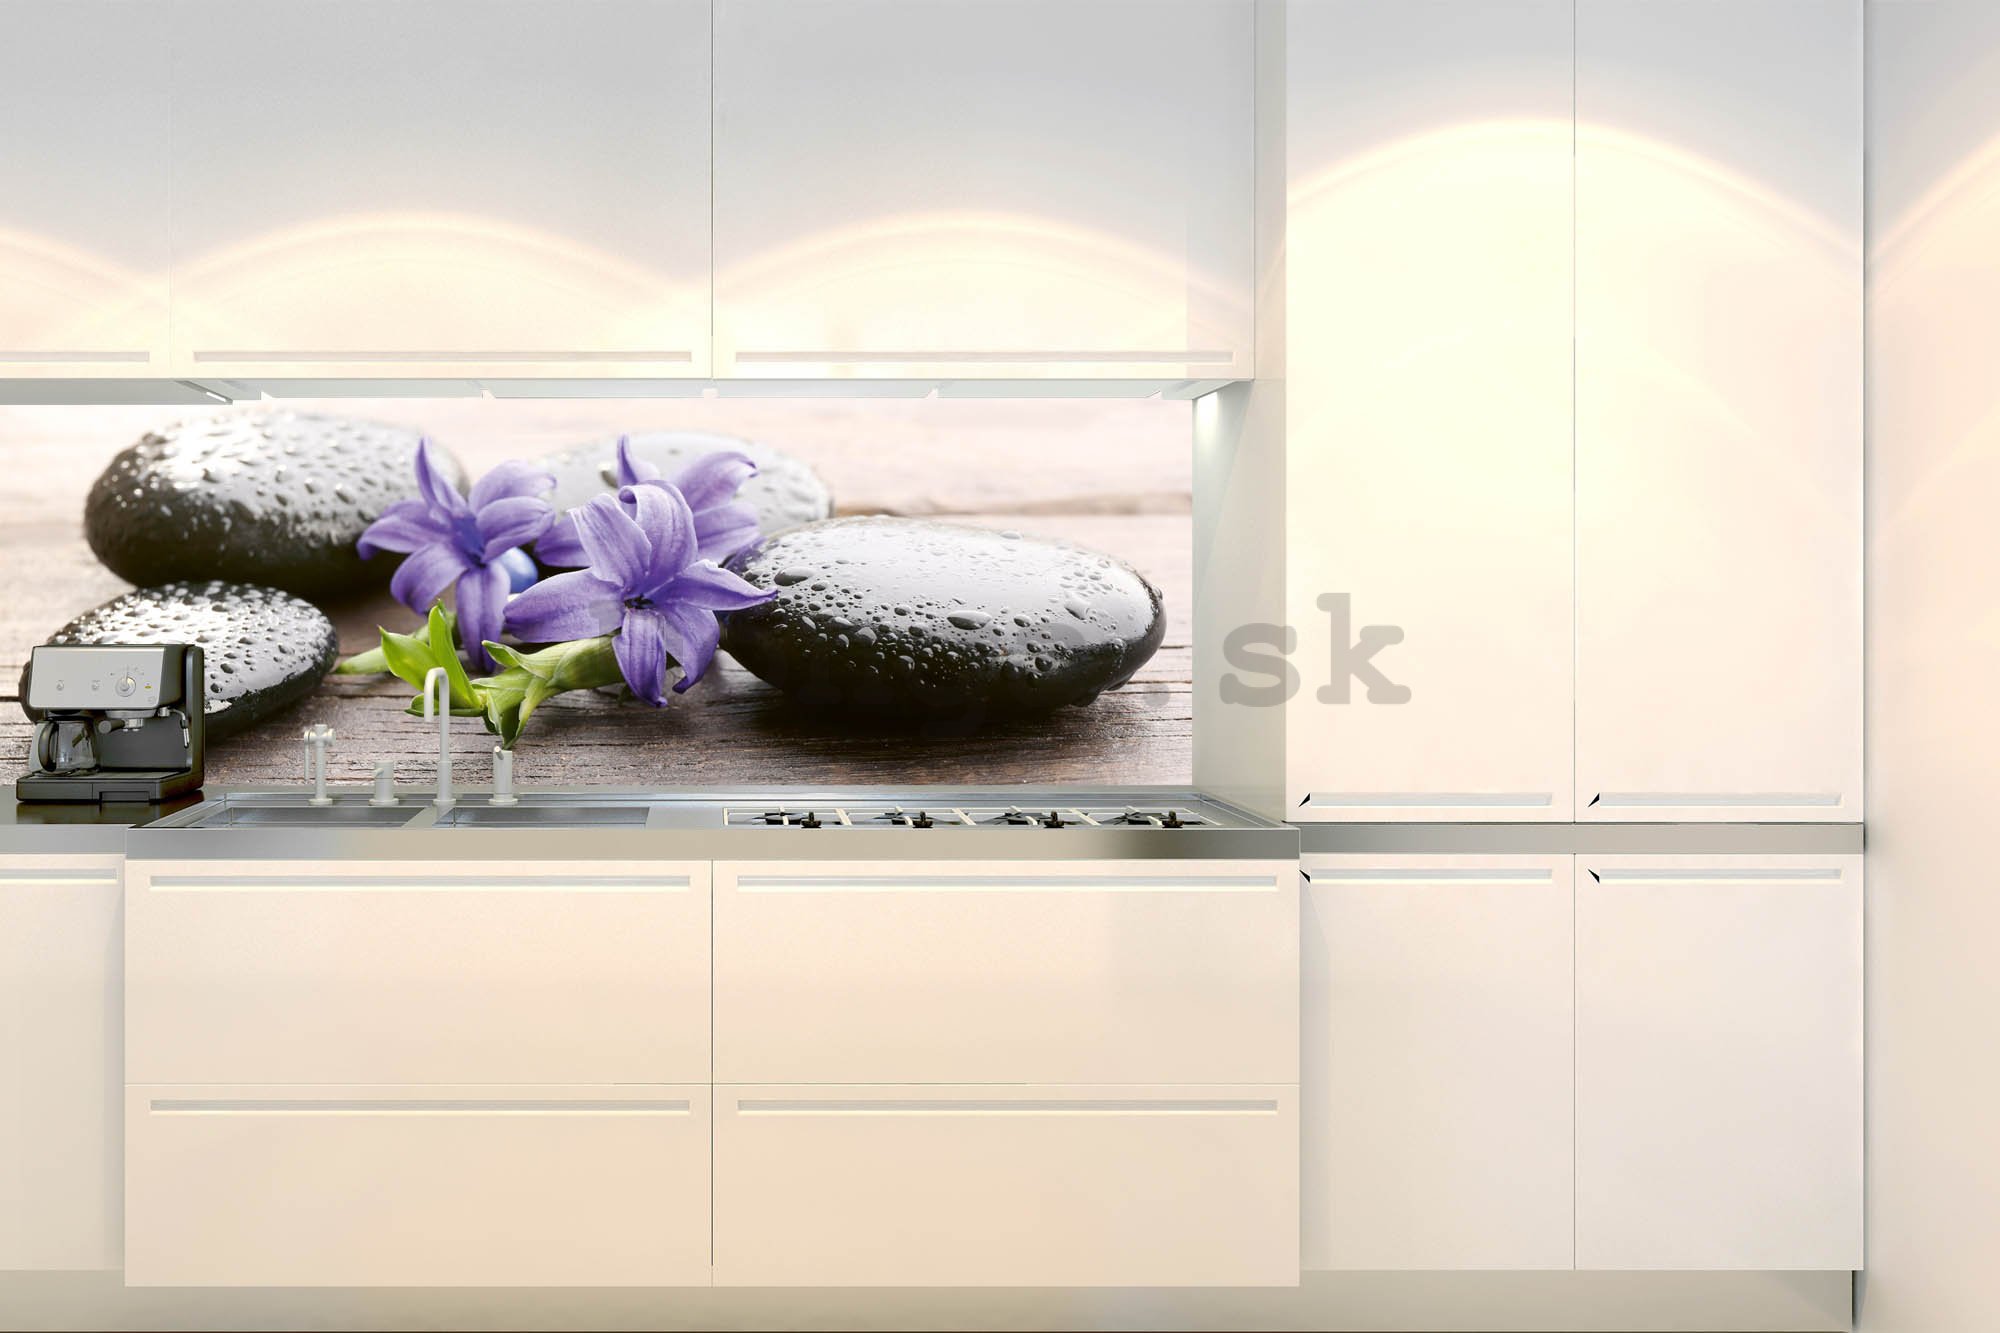 Samolepiaca umývateľná tapeta za kuchynskú linku - Kúpeľné horúce kamene, 180x60 cm